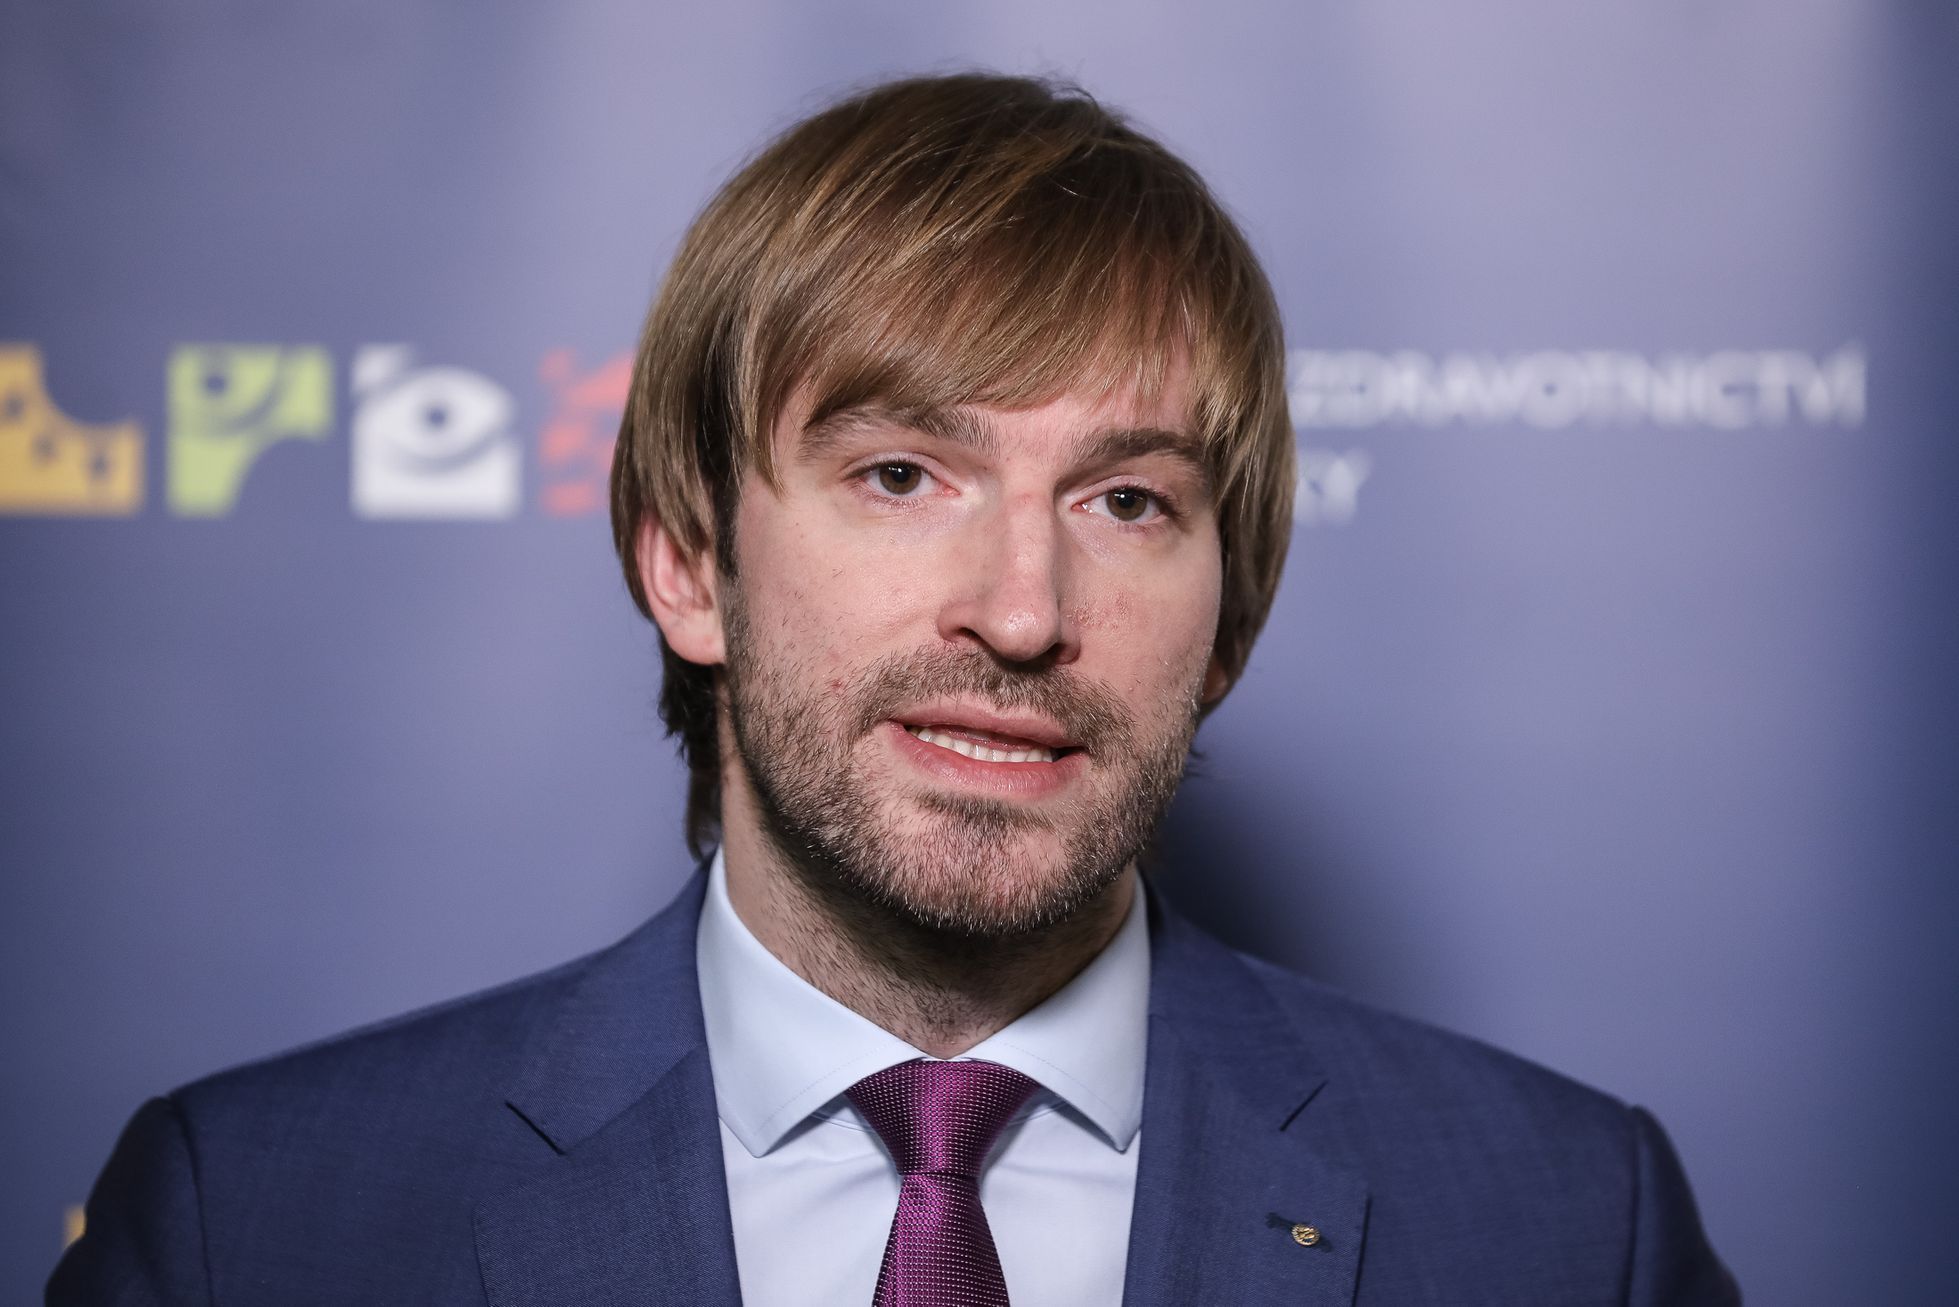 Ministr zdravotnictví Adam Vojtěch, tisková konference, portrét, 2. 04. 2019